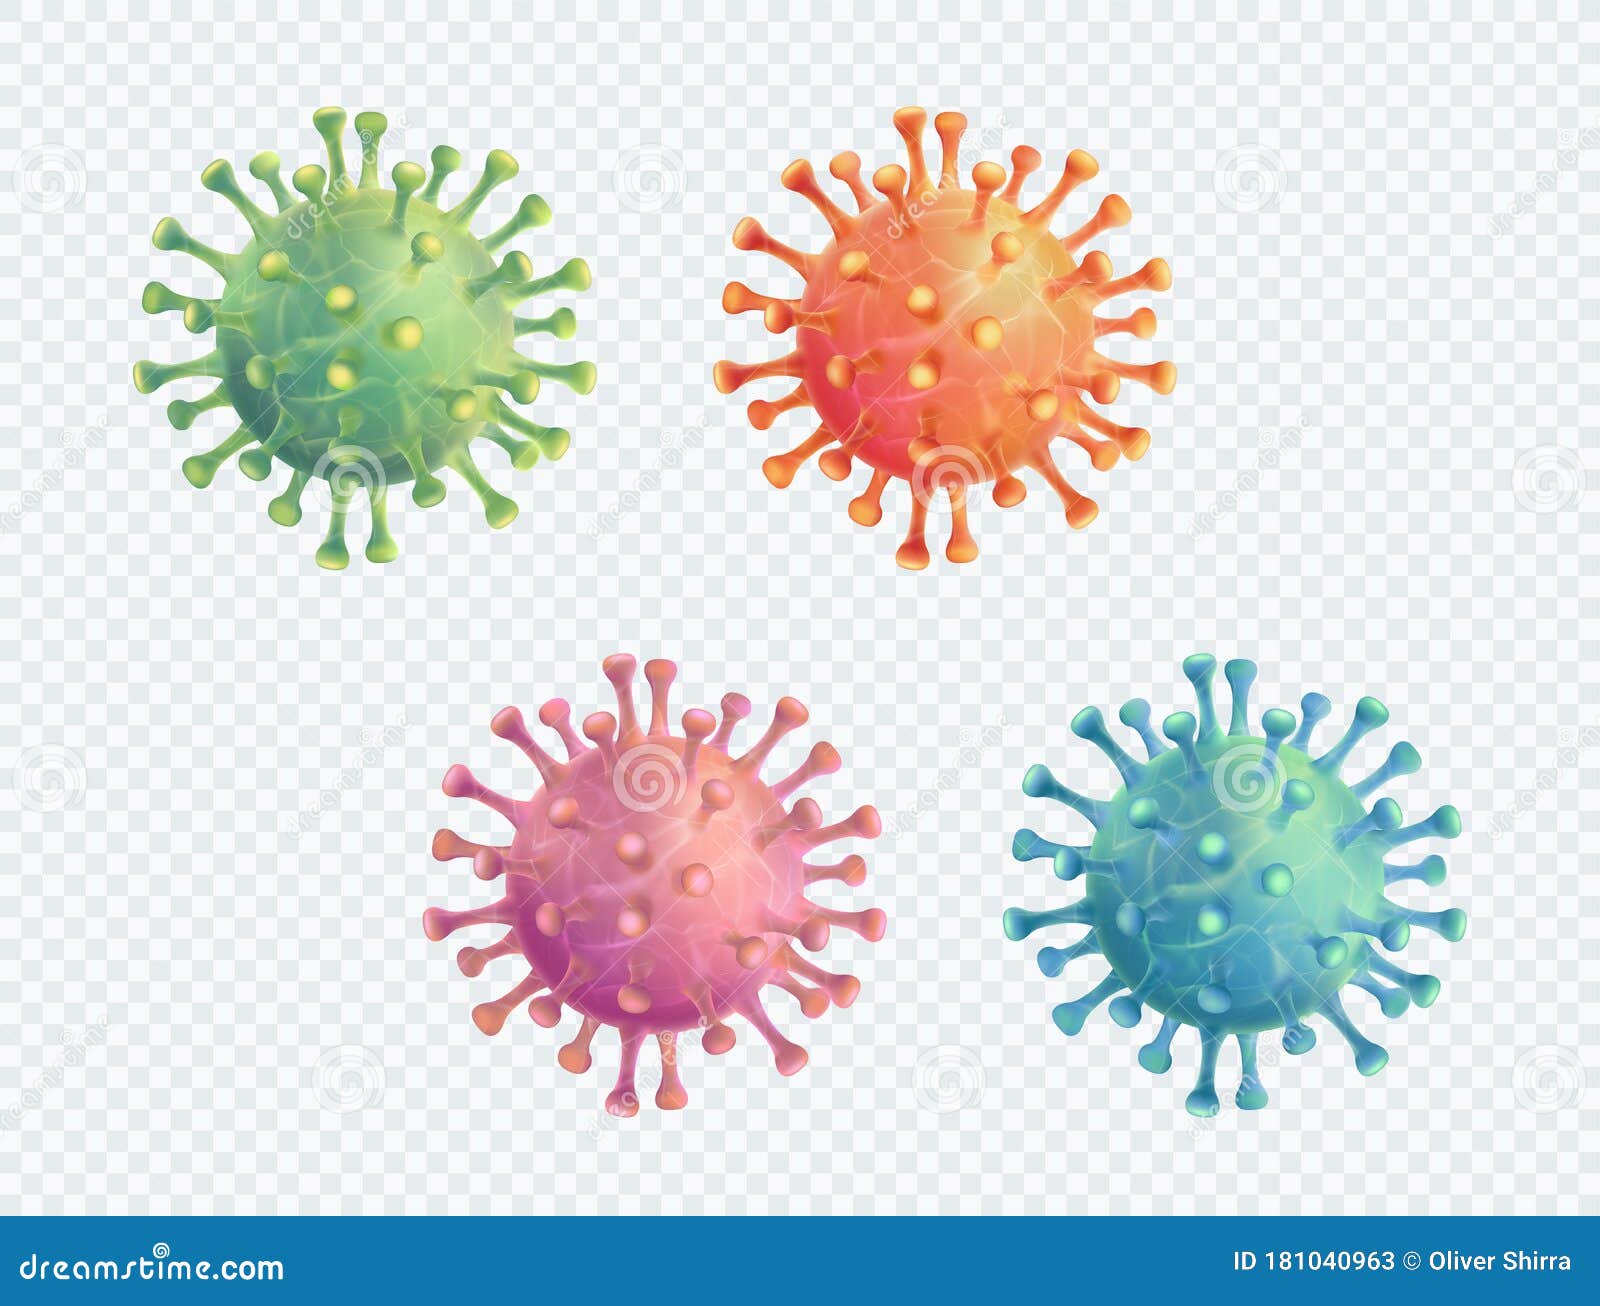 coronavirus covid-19  3d realistic  set